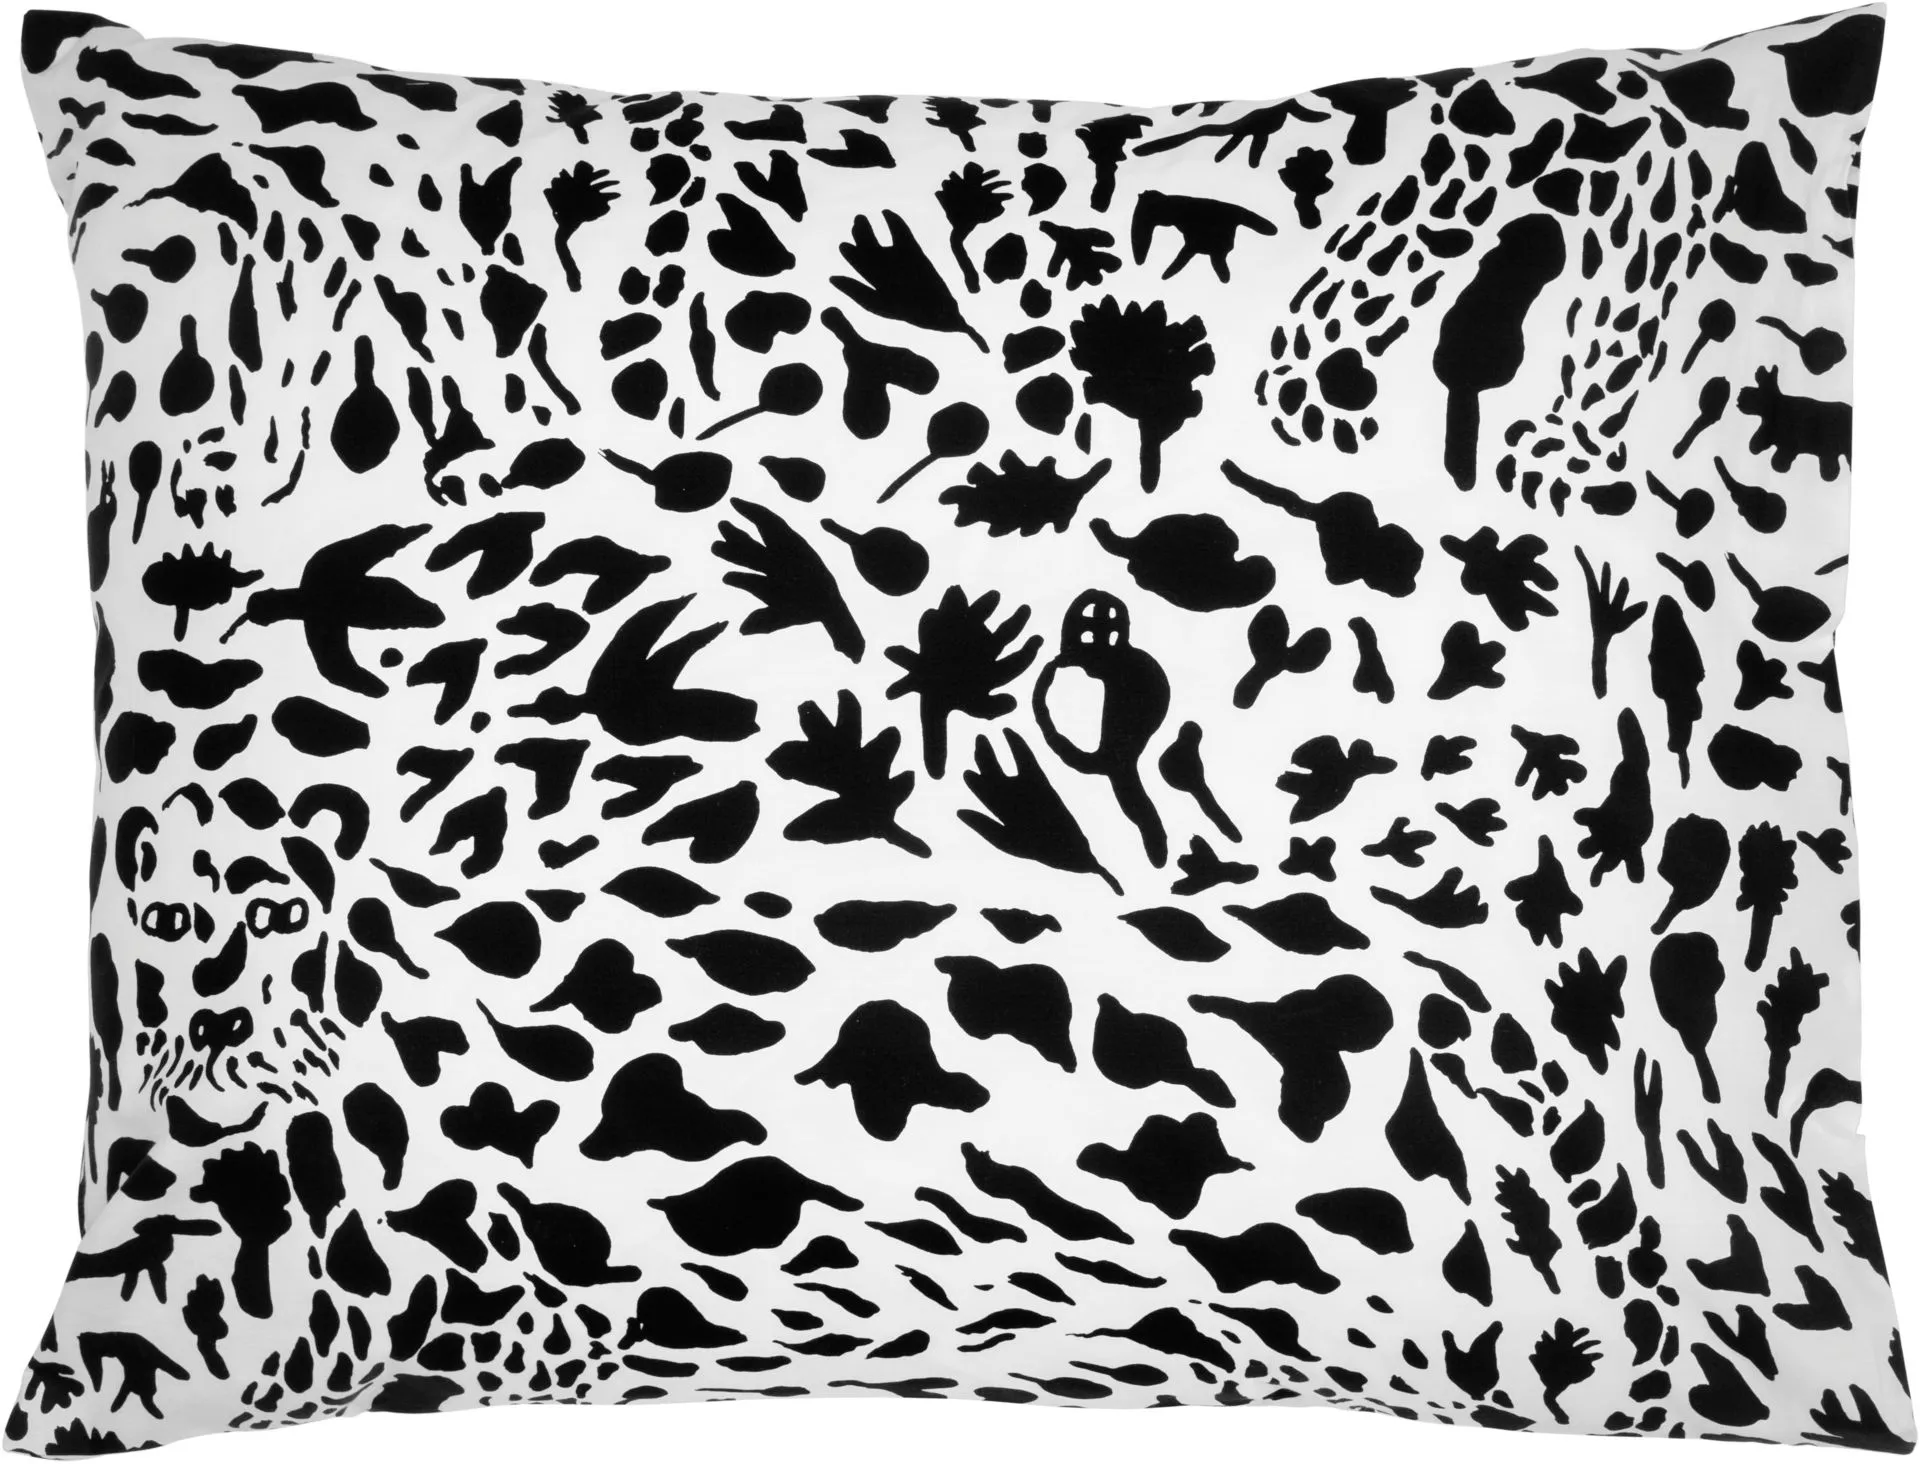 Iittala Oiva Toikka Collection pussilakanasetti 150x210 gepardi mustavalkoinen, materiaali 100% perkaalipuuvilla. - 3